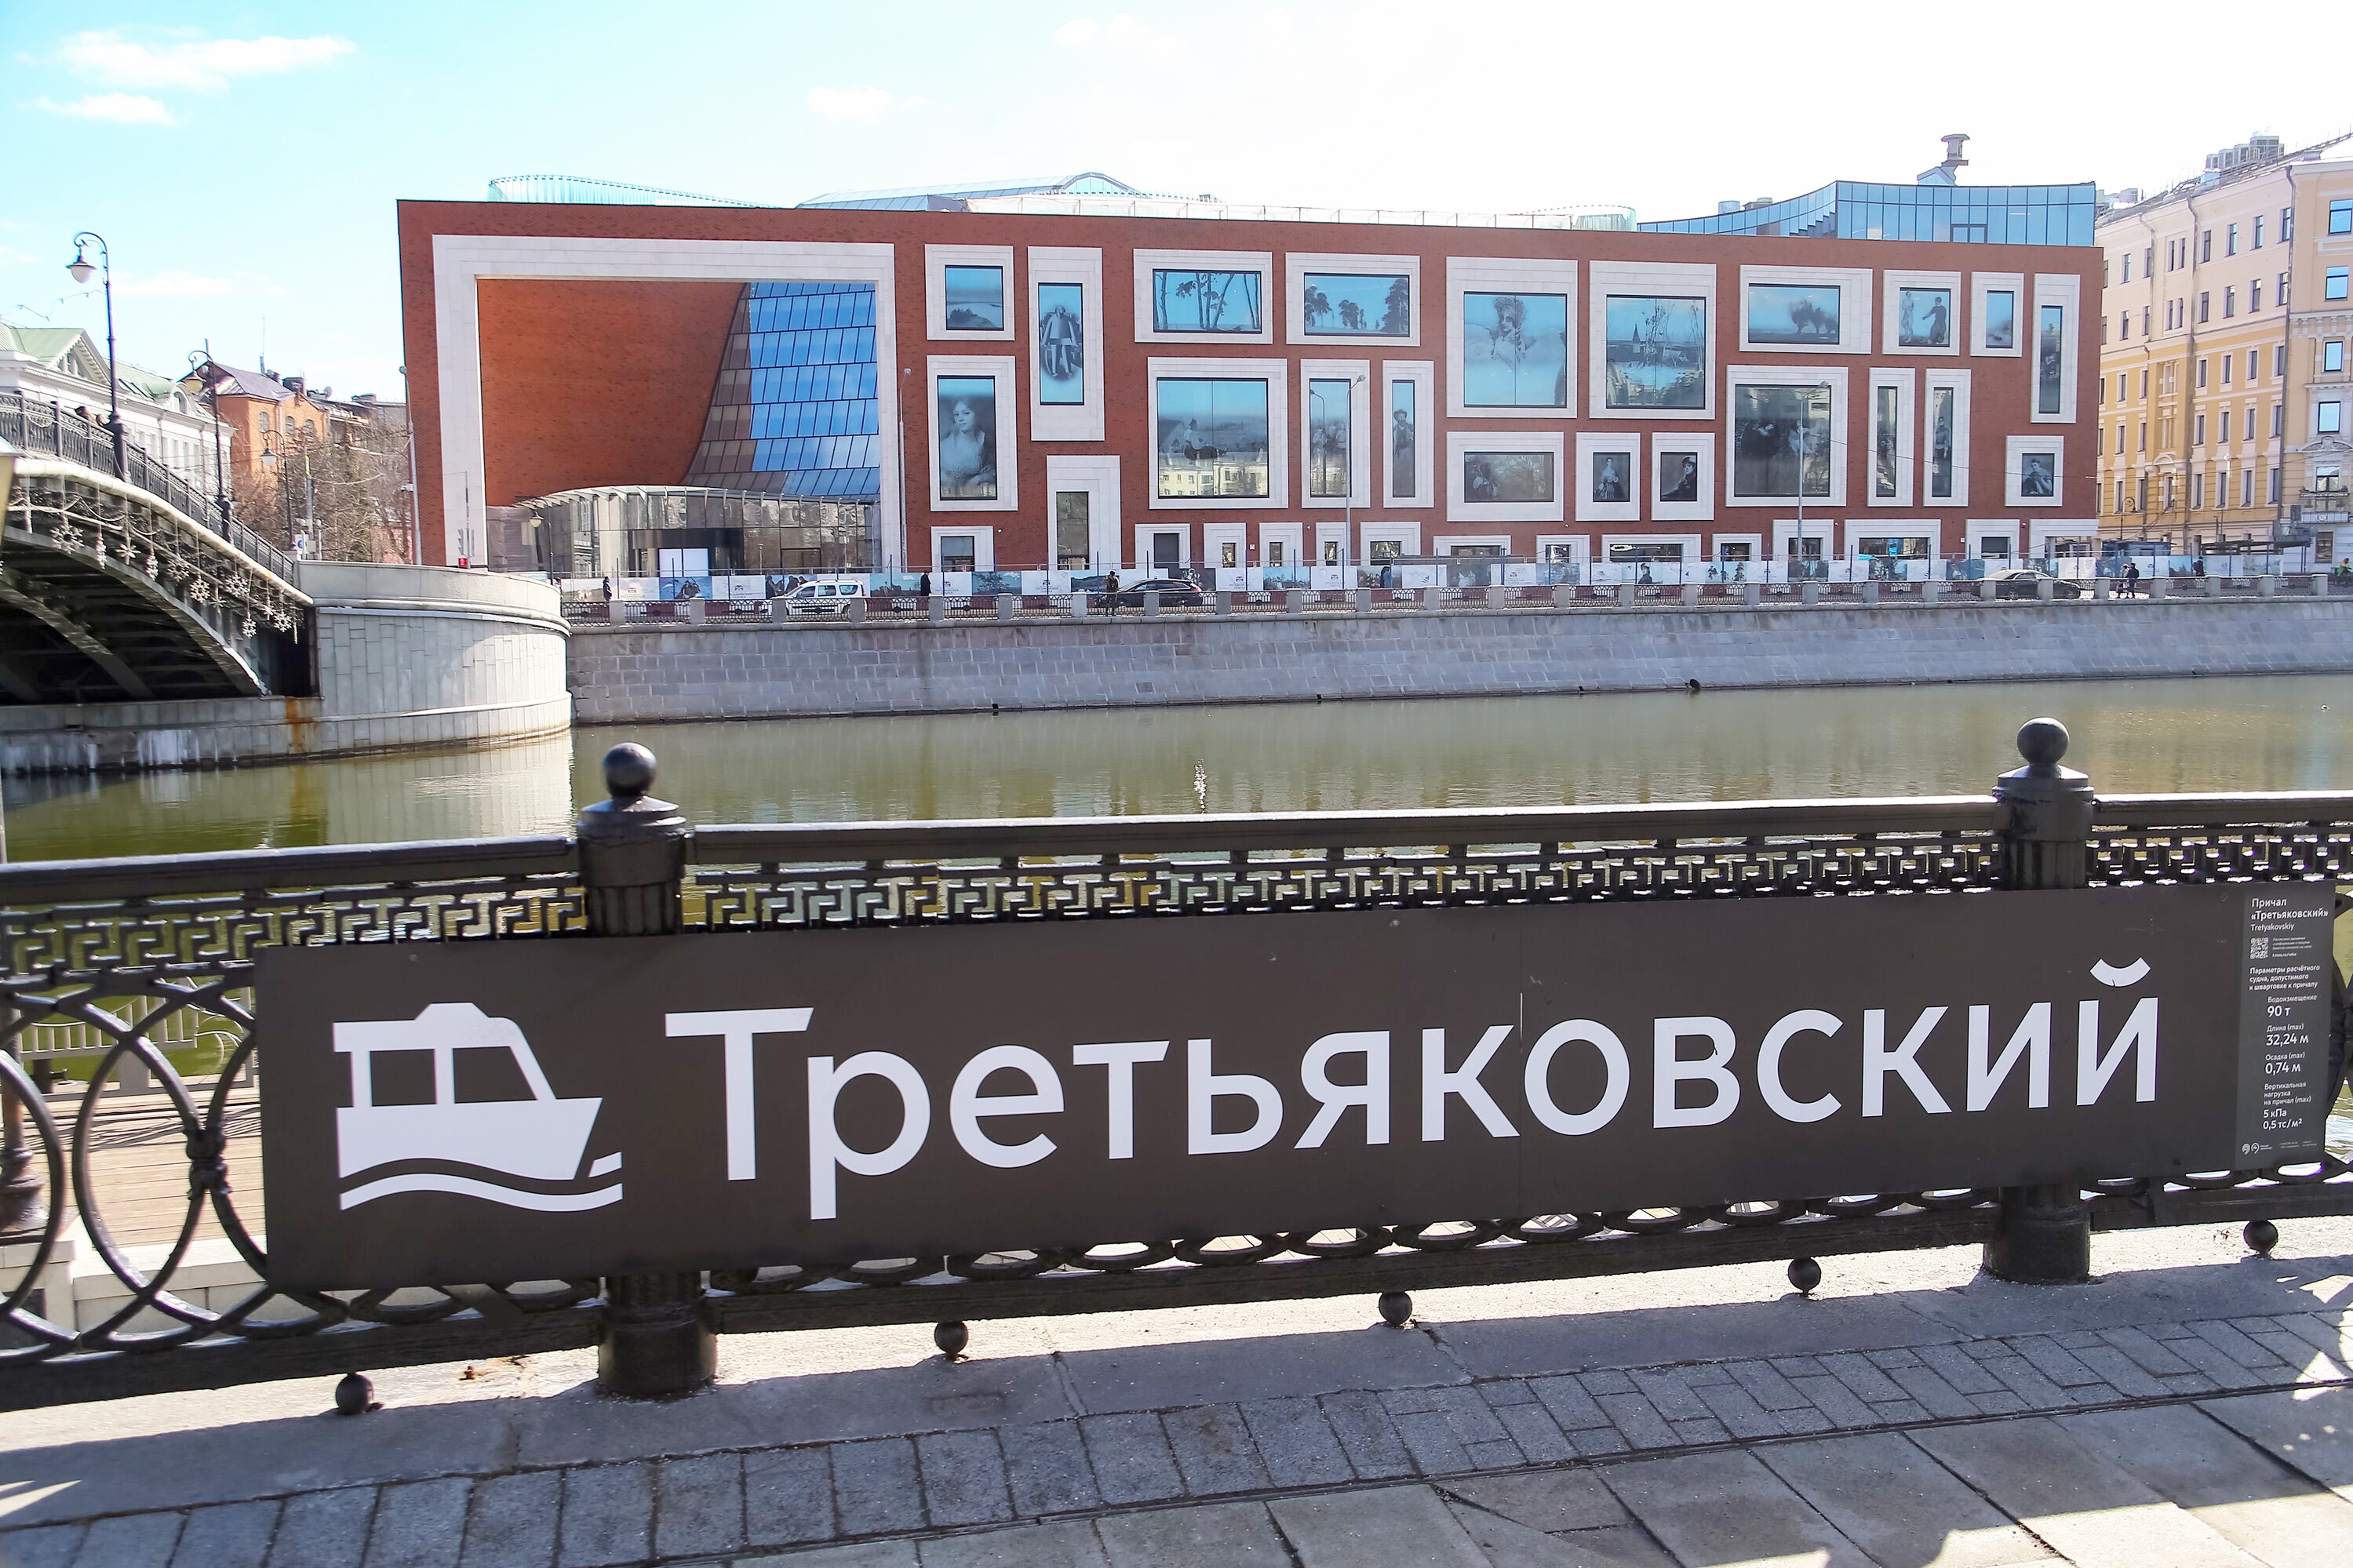 Третьяковская галерея открыла новое здание на Кадашевской набережной